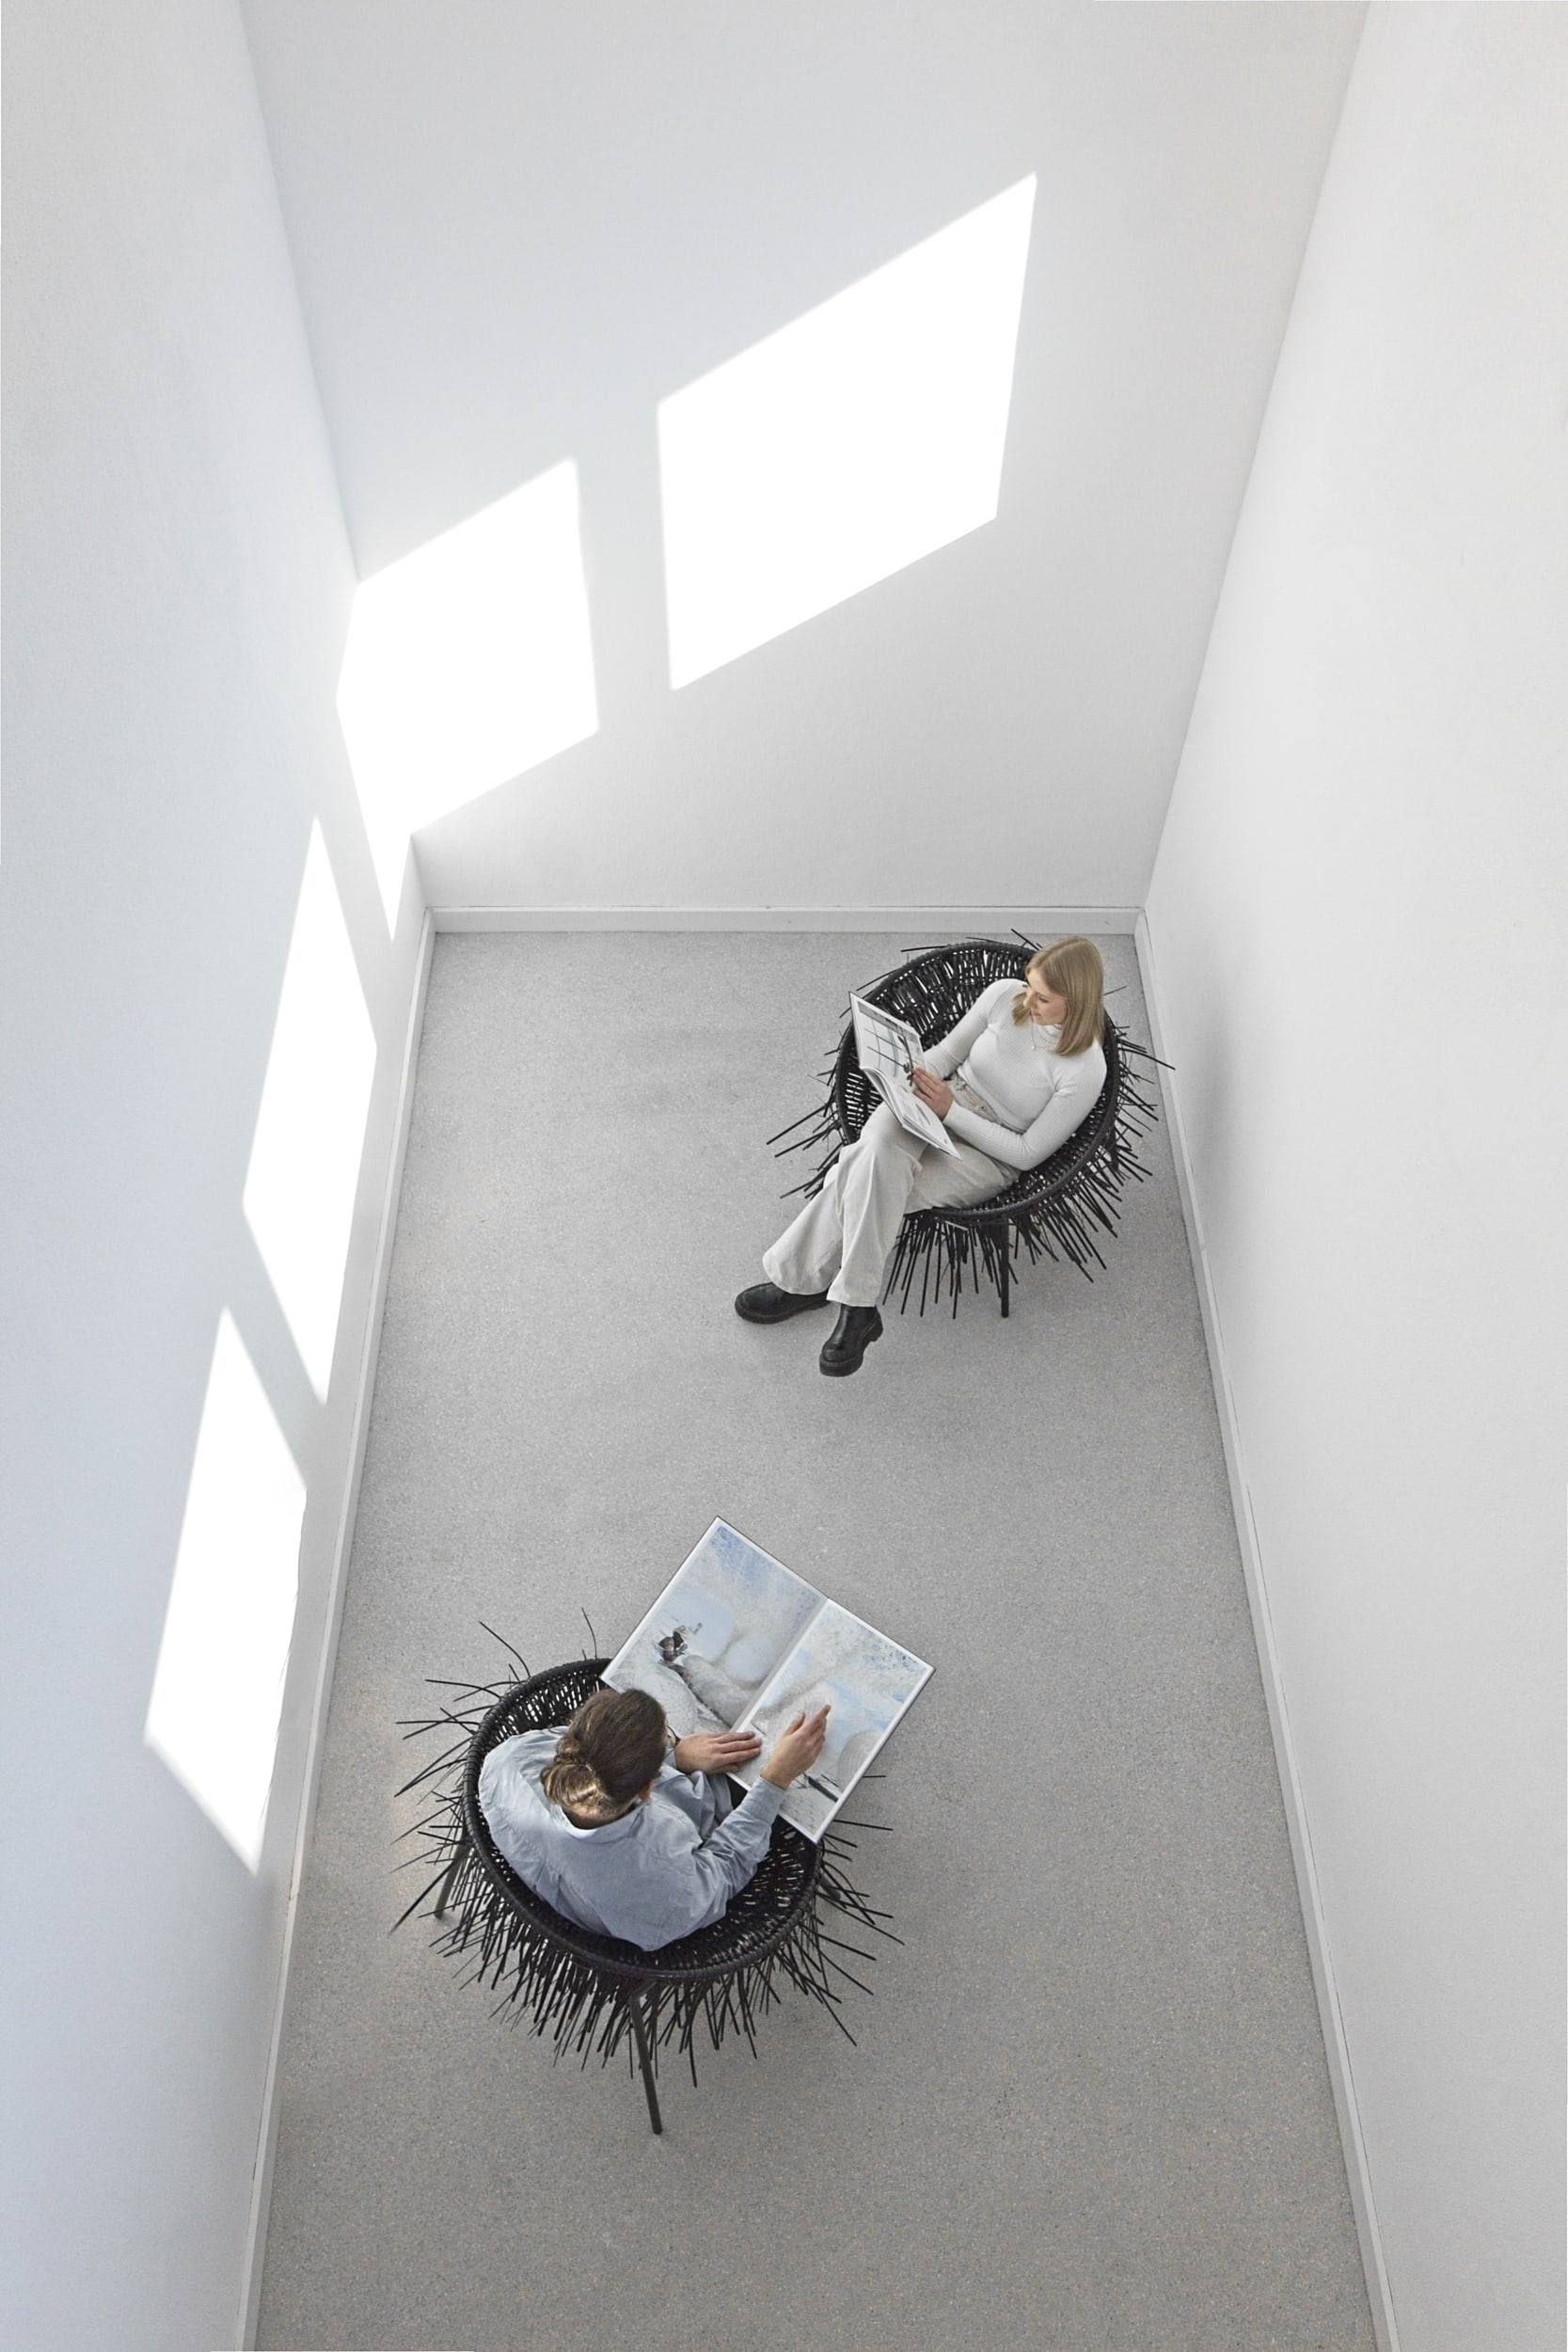 Zwei Personen sitzen auf Oricio-Sesseln aus verflochtenen Kabelbindern in einem hellen Raum